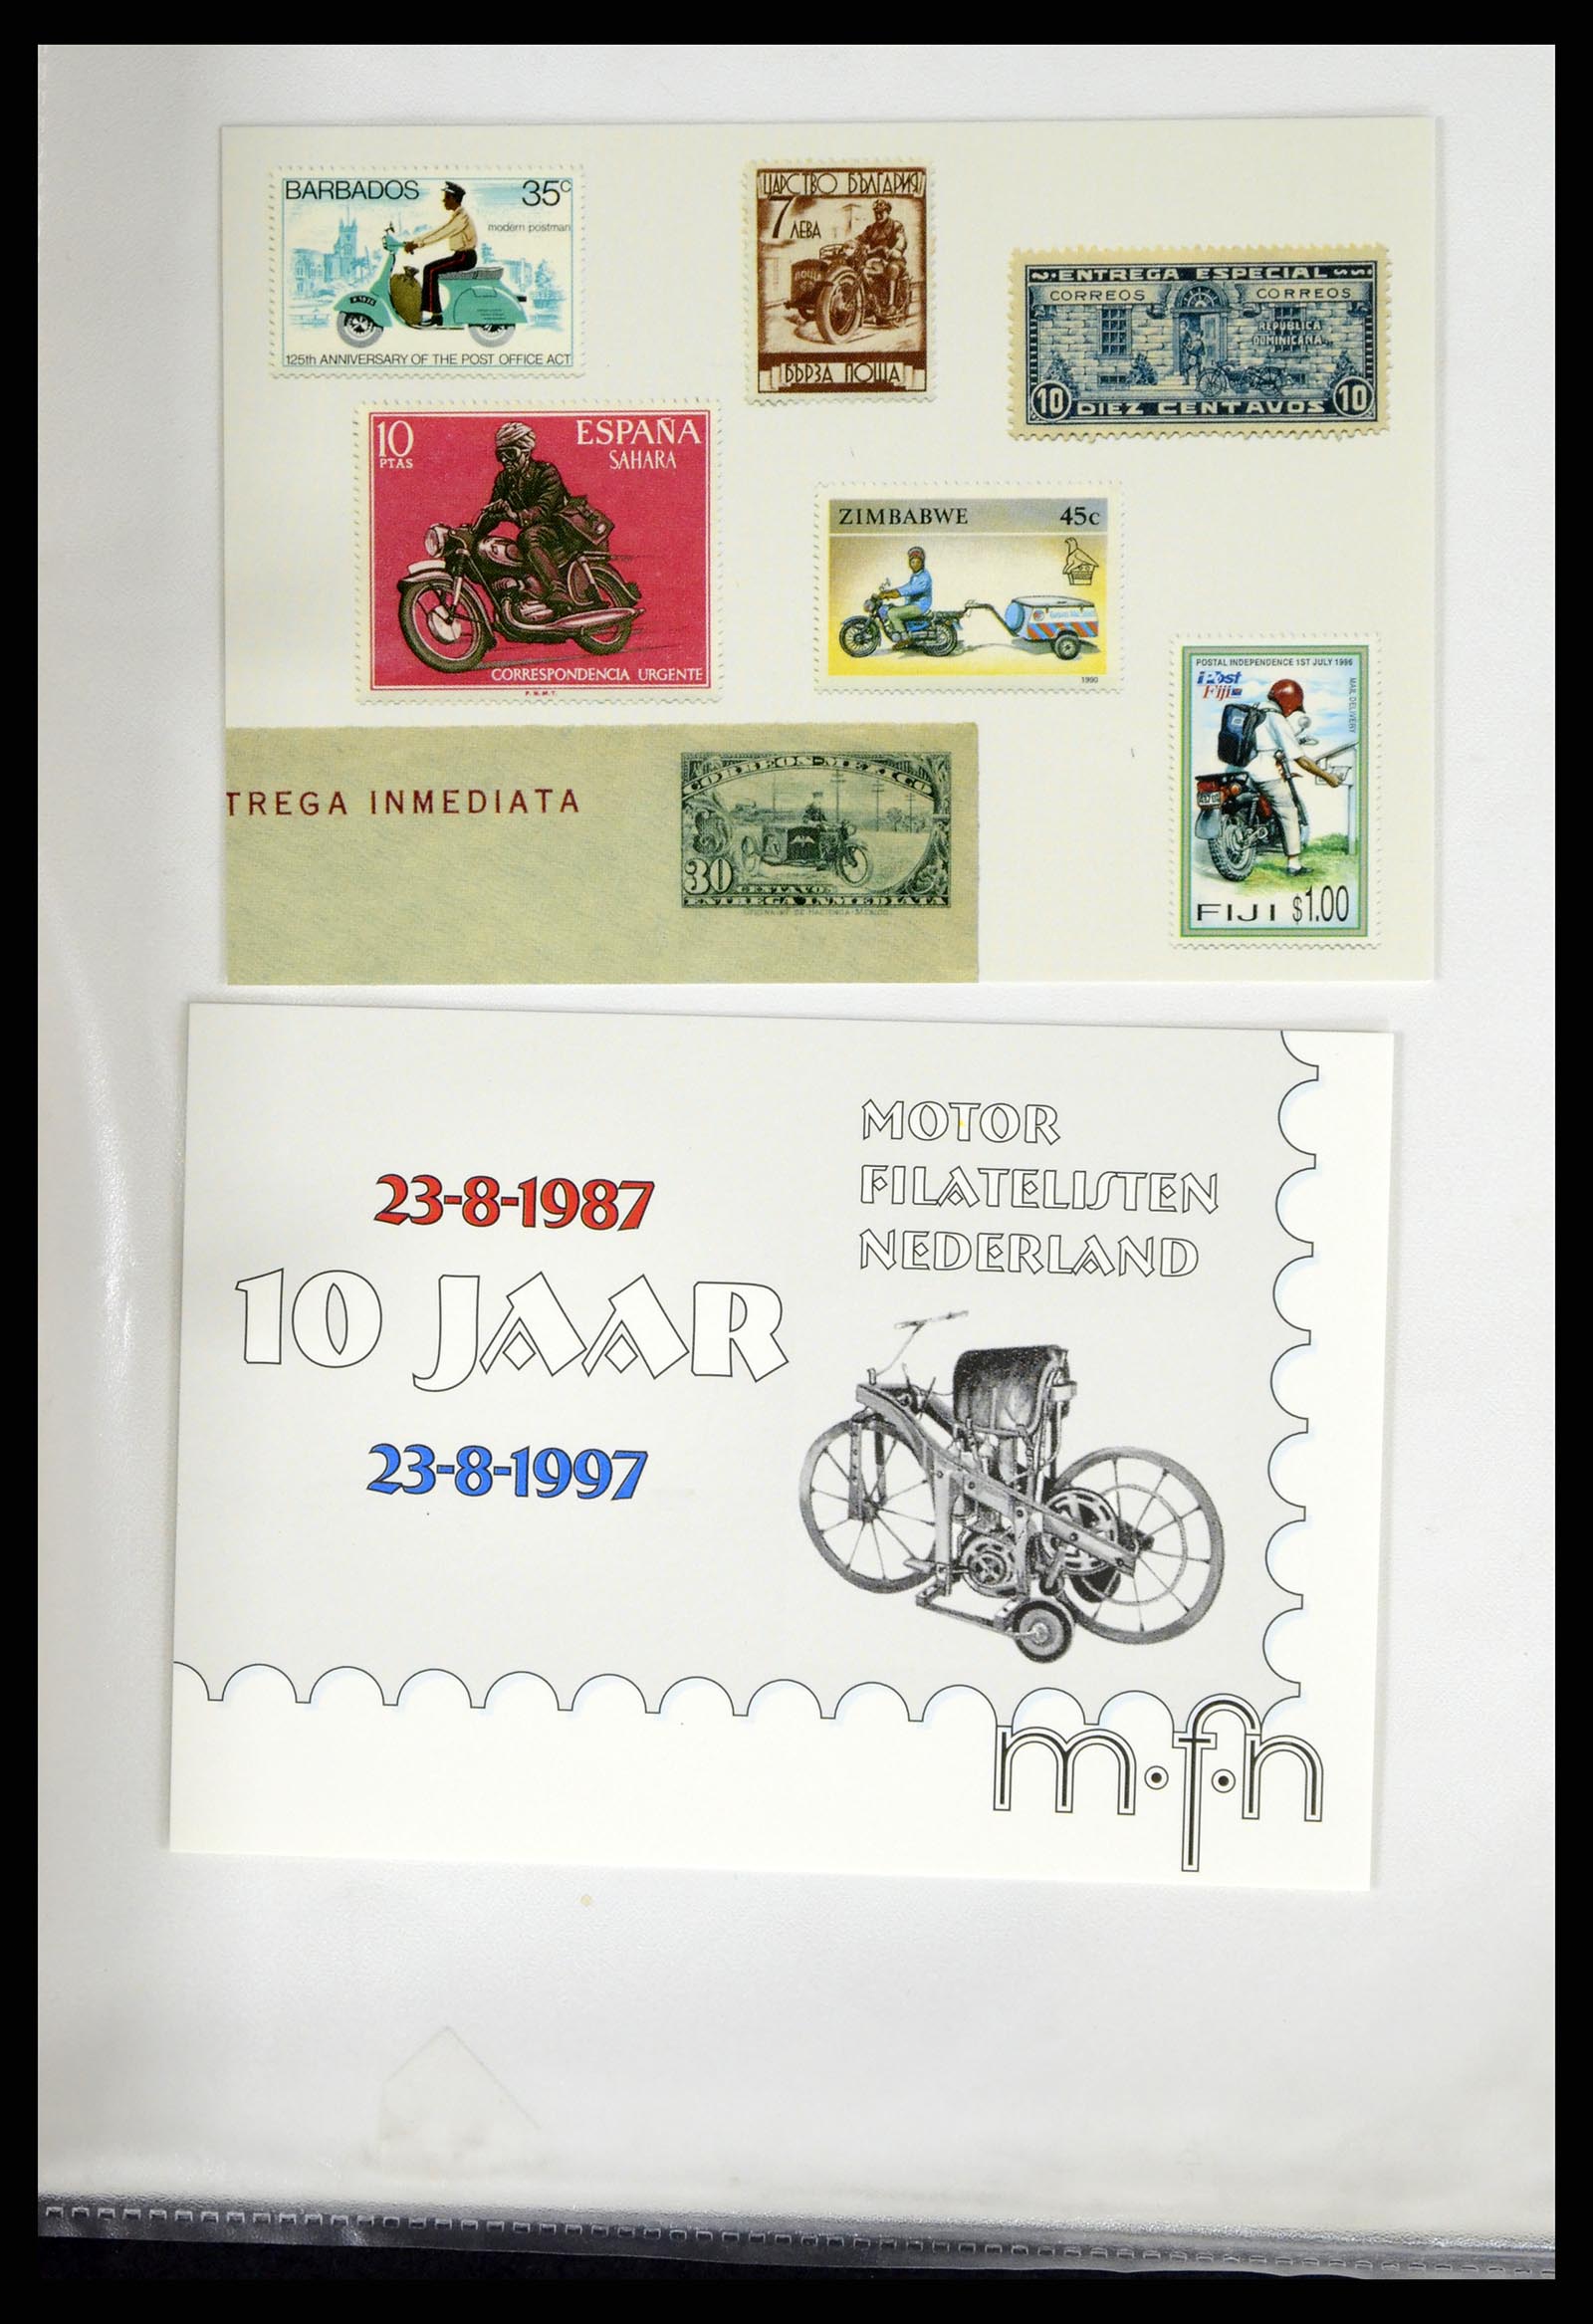 37462 326 - Postzegelverzameling 37462 Motief Motoren 1922-2000.